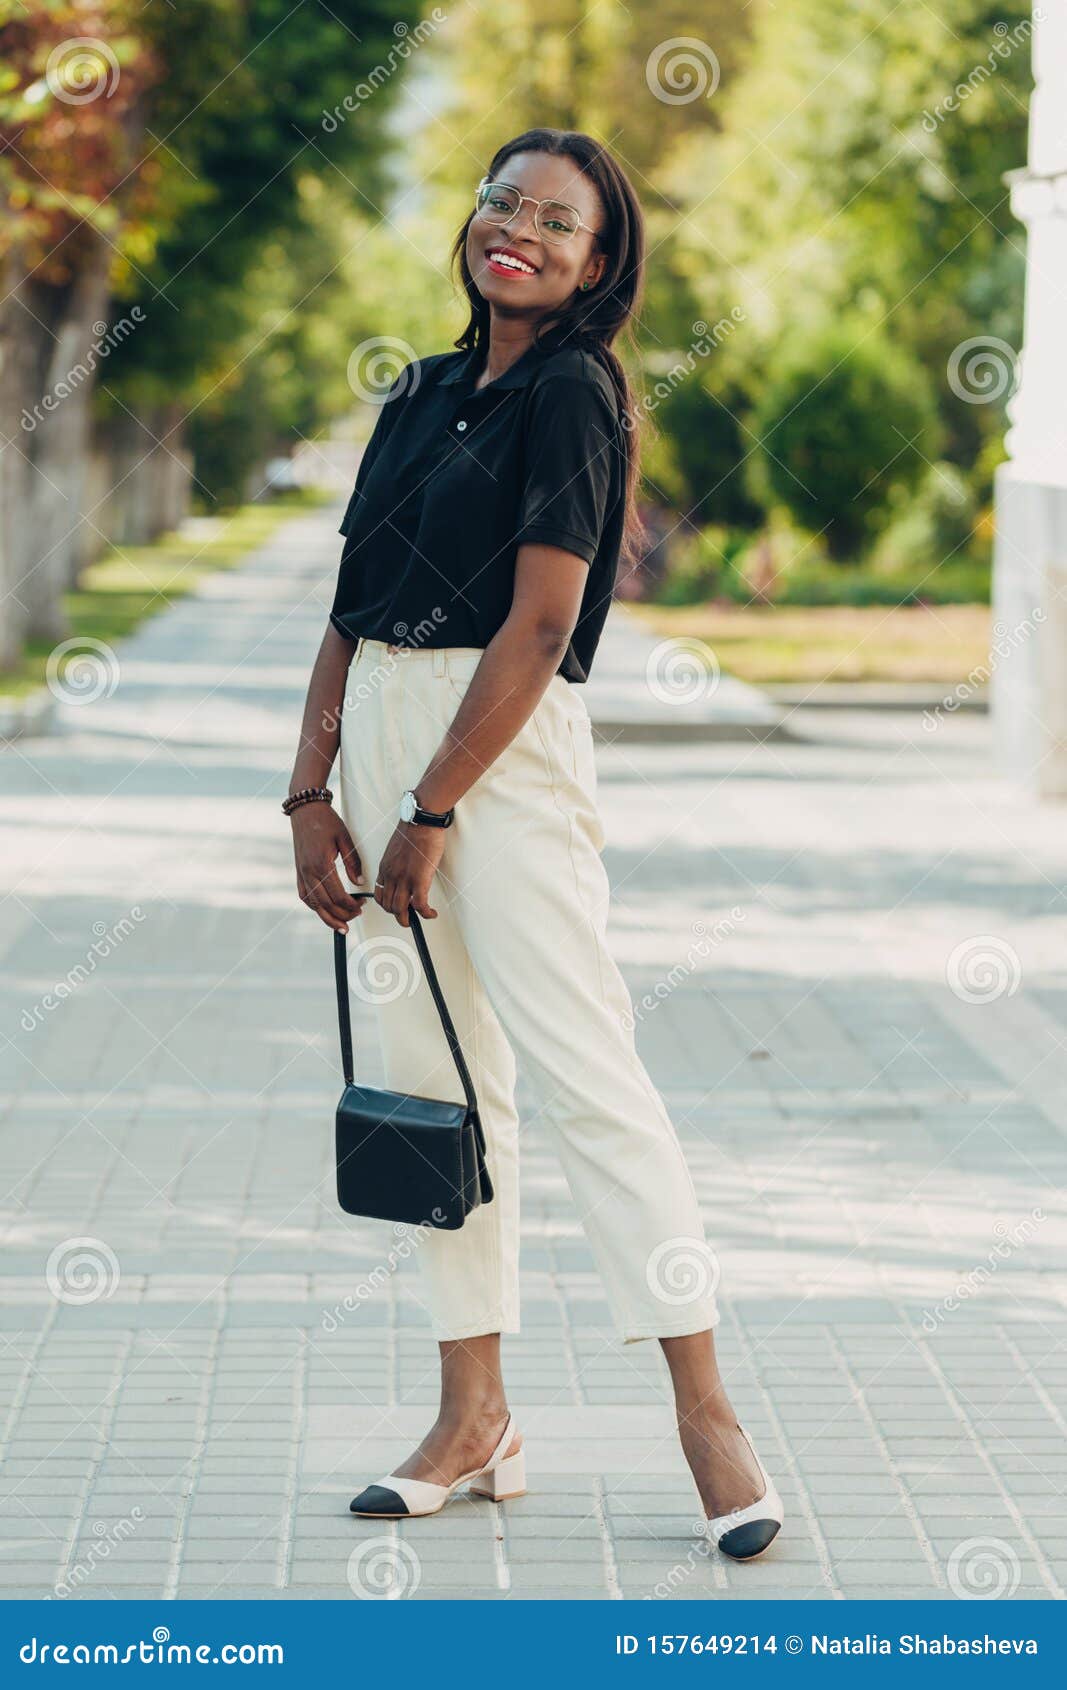 Retrato De Moda De Cuerpo Entero Al Aire Libre De Joven Piel Negra. Modelo  Caminando En La Calle De La Ciudad Foto de archivo - Imagen de hermoso,  gente: 157649214